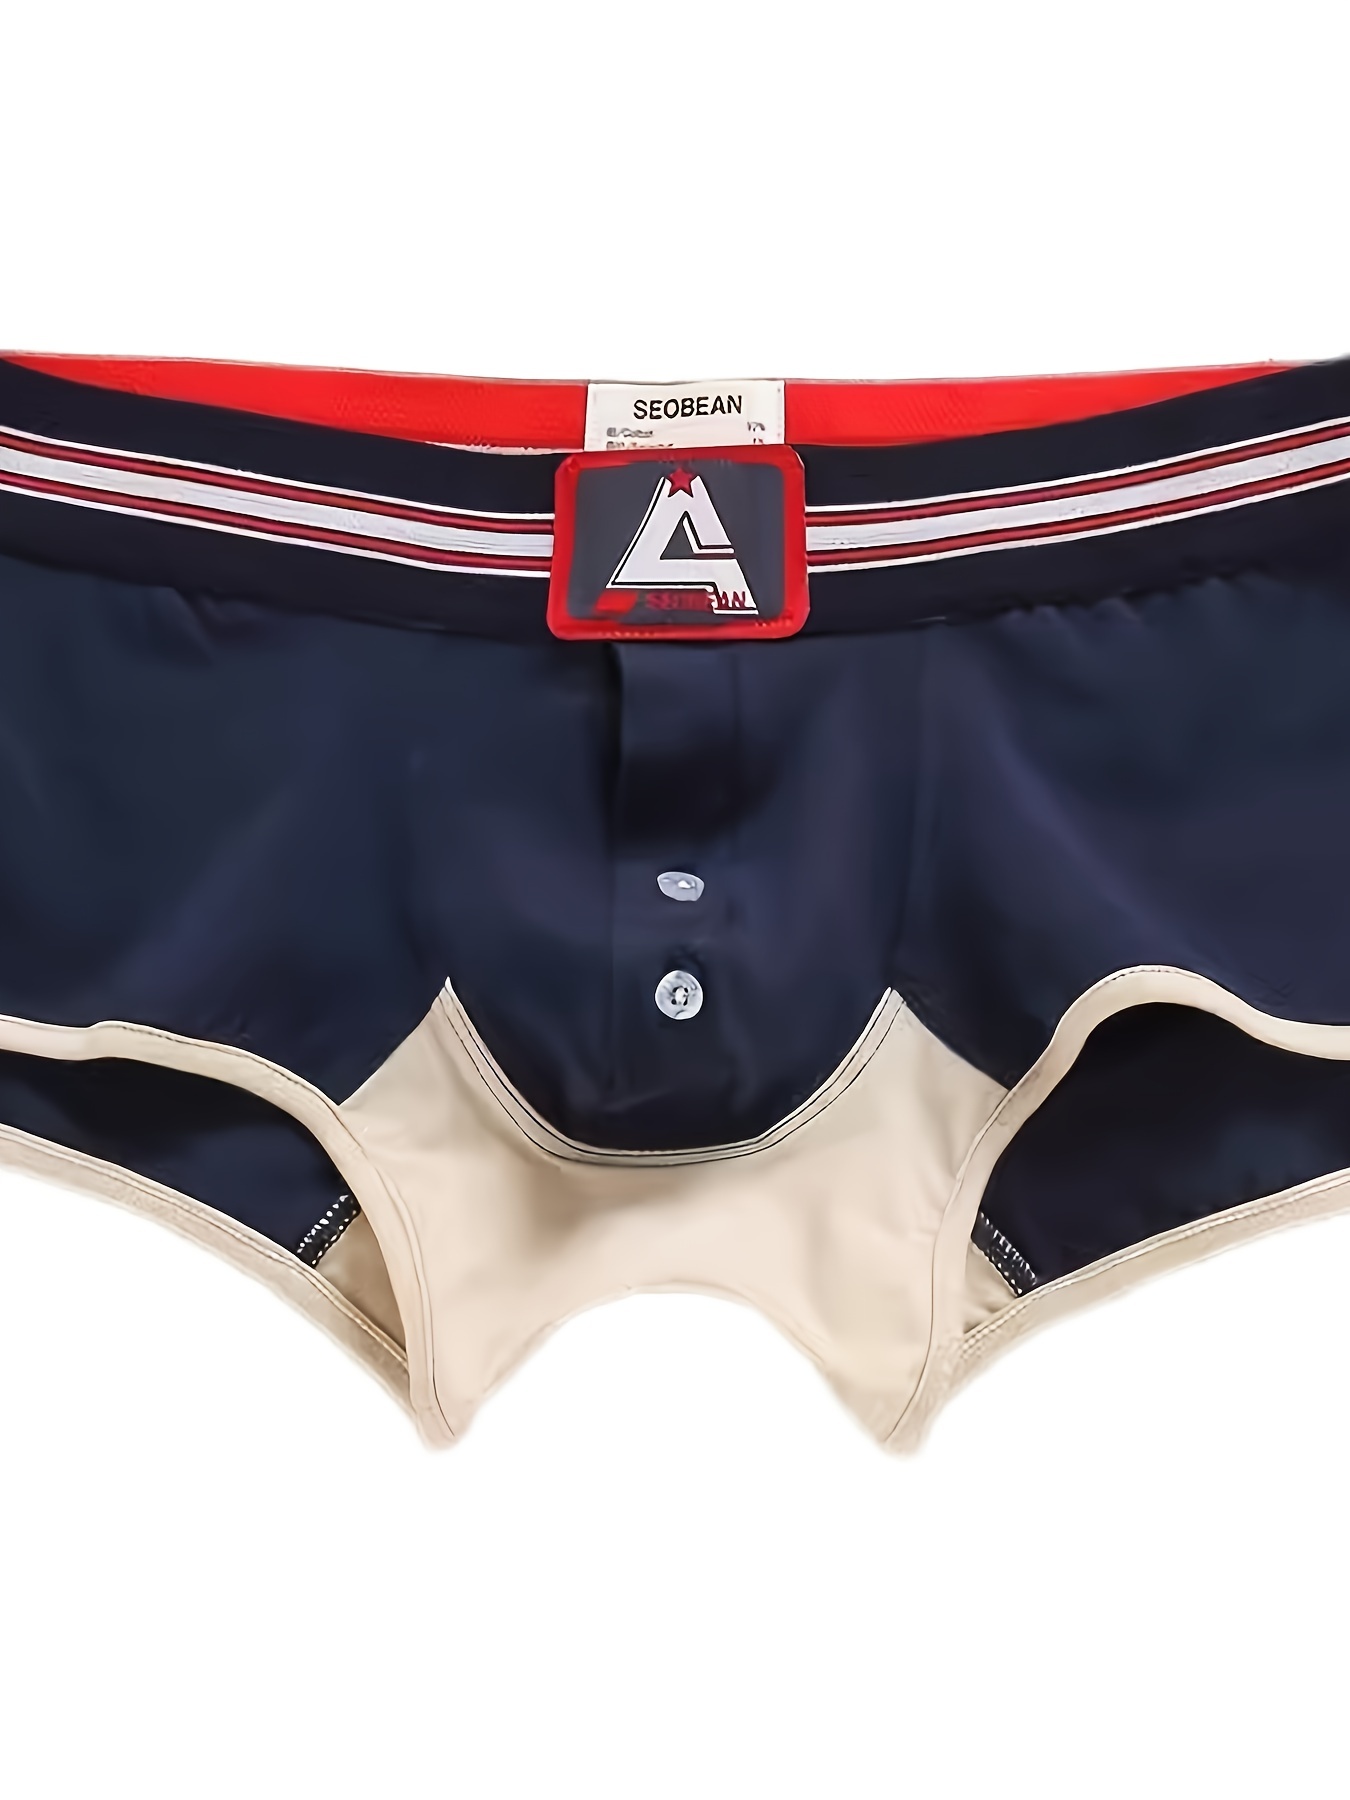 Men's Boxer Briefs Open Front Pouch Shorts Underwear Sexy Lingerie  Underpants~